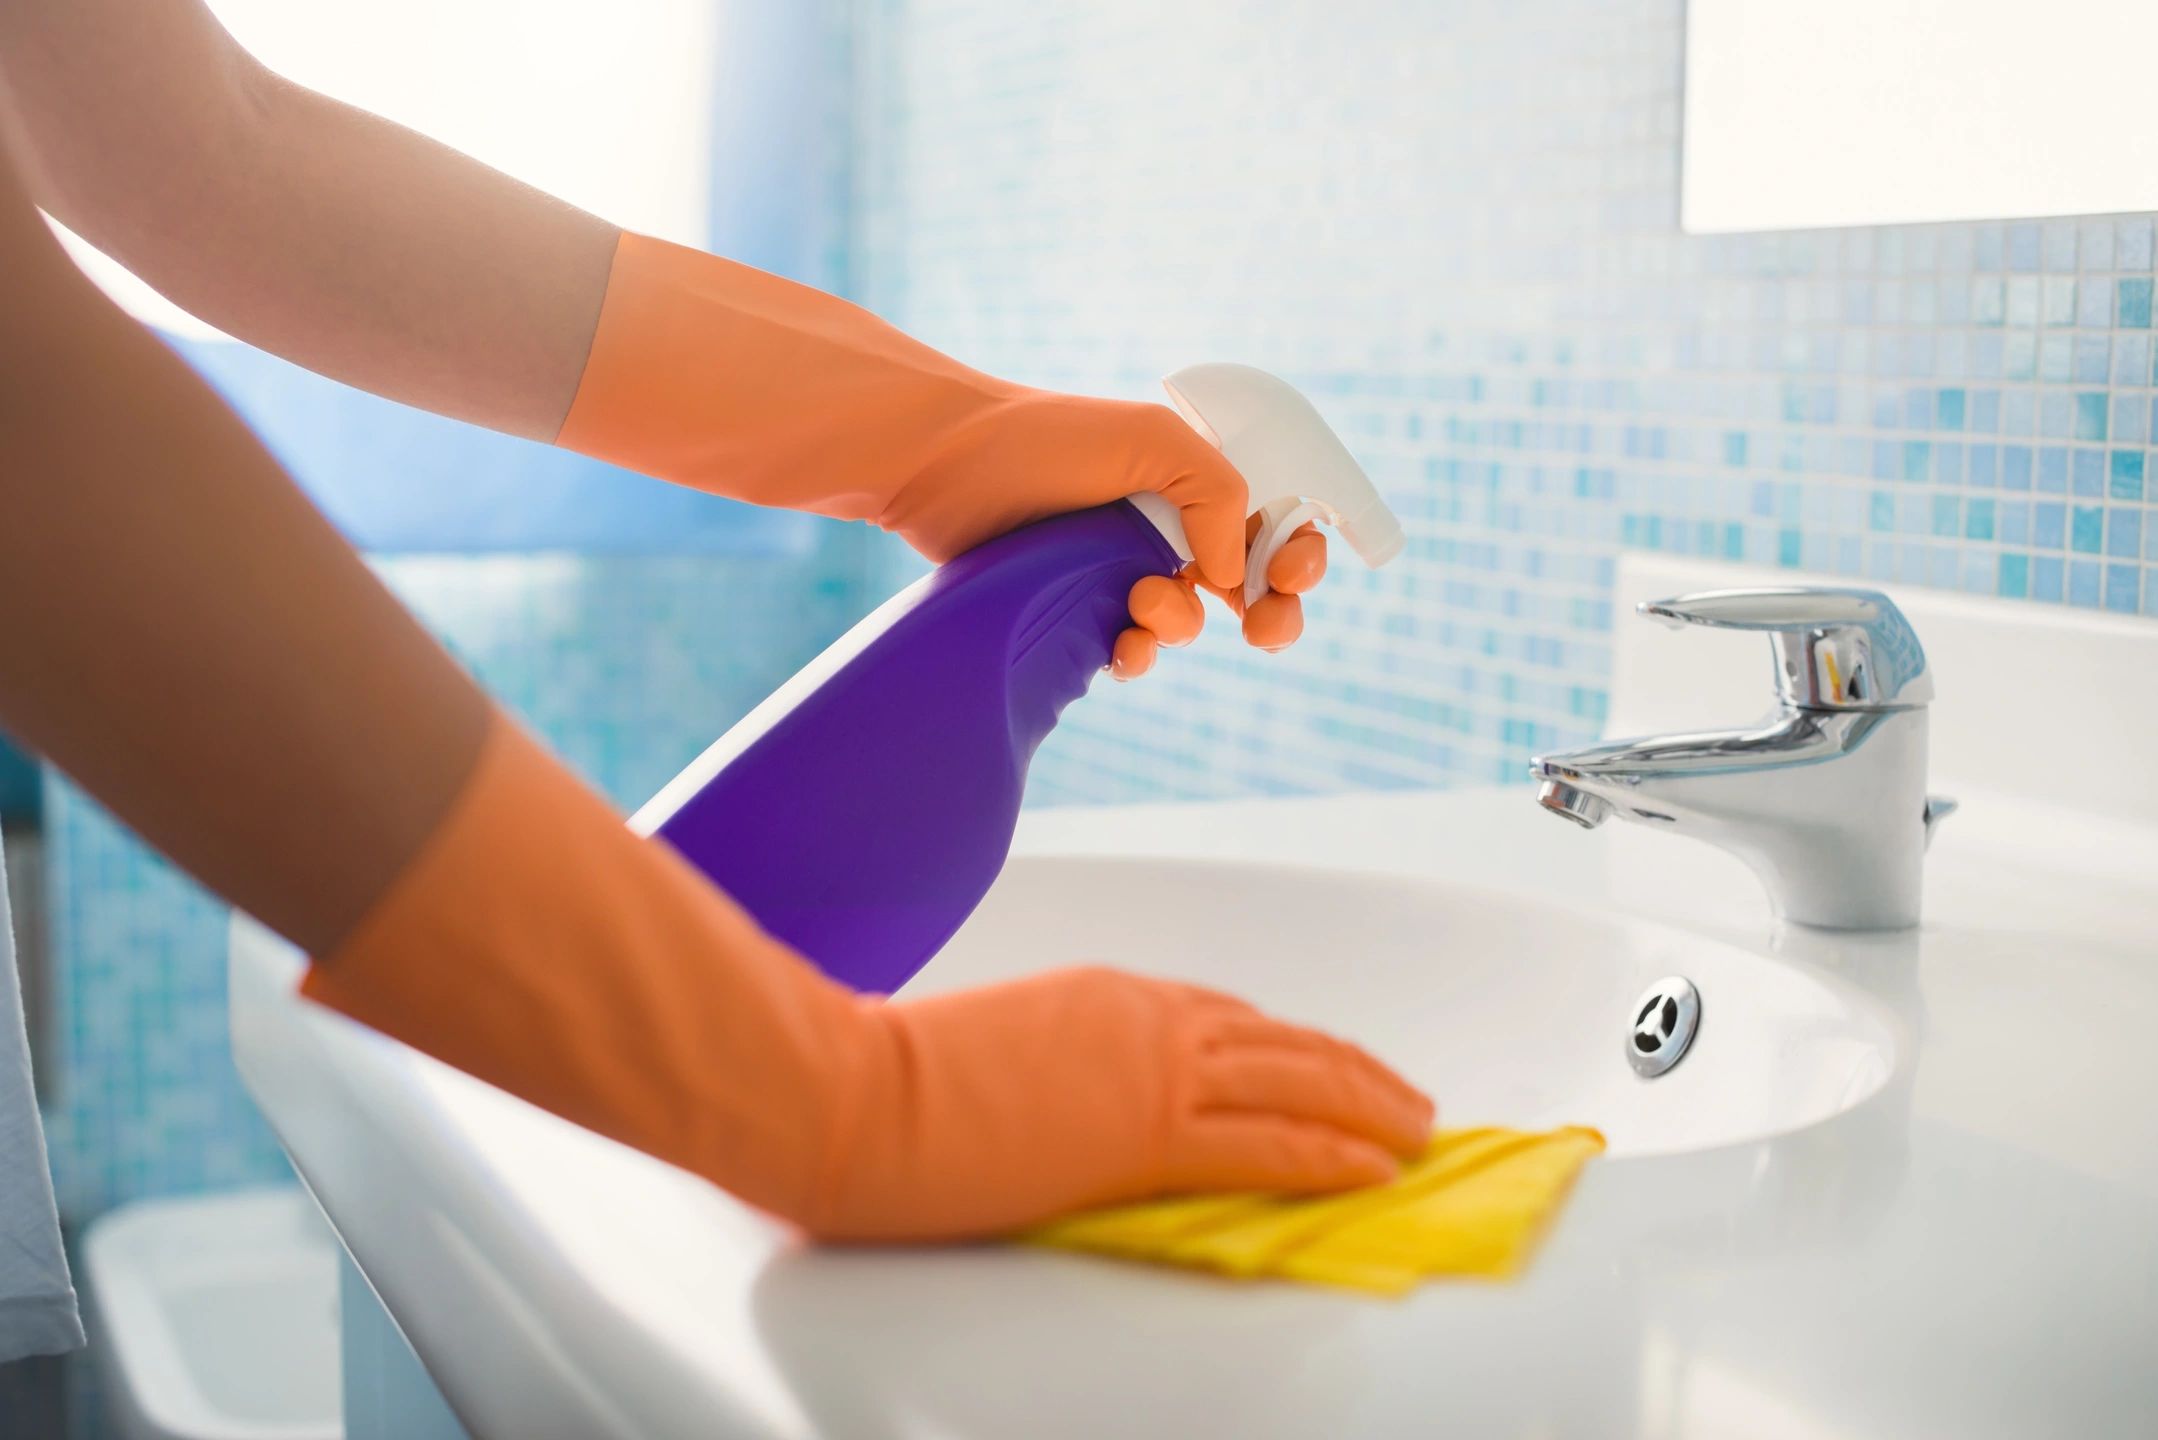 La limpieza es la mejor forma para prevenir el Coronavirus en casa